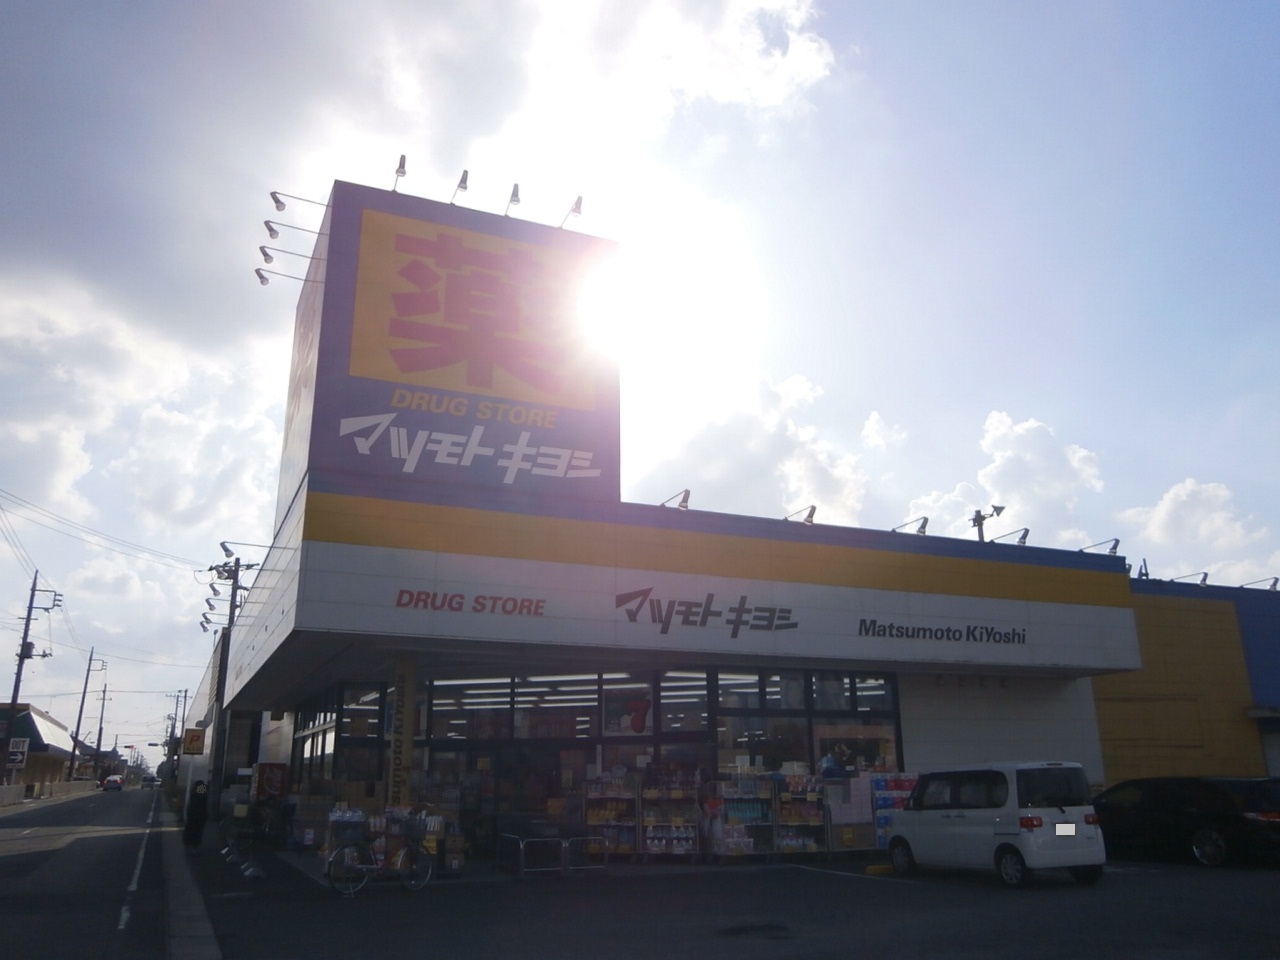 Dorakkusutoa. Drugstore Matsumotokiyoshi Kamisu shop 869m until (drugstore)